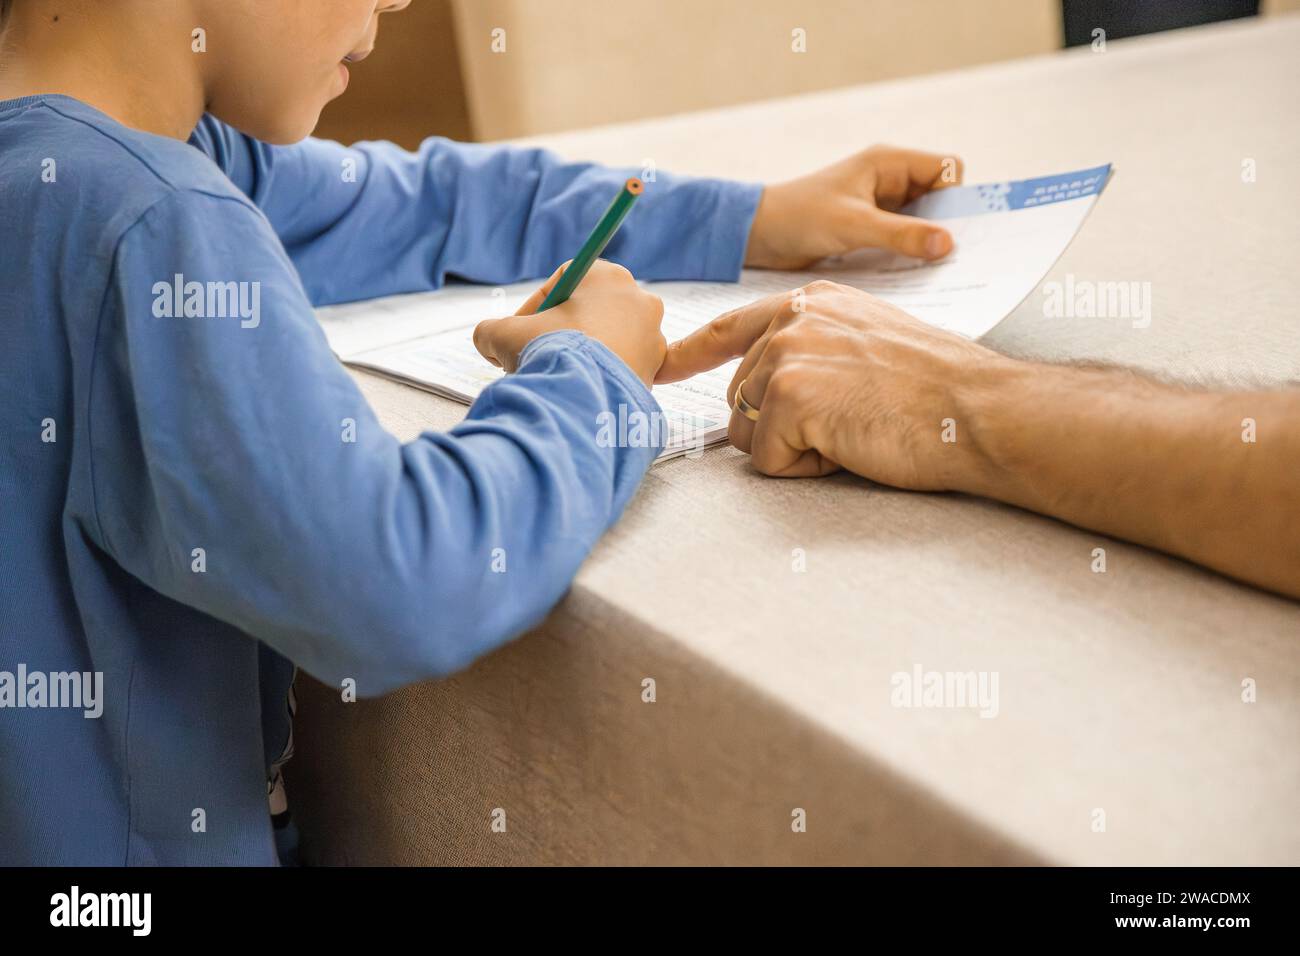 Kaukasisches Grundschulkind, das am Ende des Schultages mit elterlicher Hilfe und Unterstützung Hausaufgaben macht. Nahaufnahme und Kopierbereich. Stockfoto